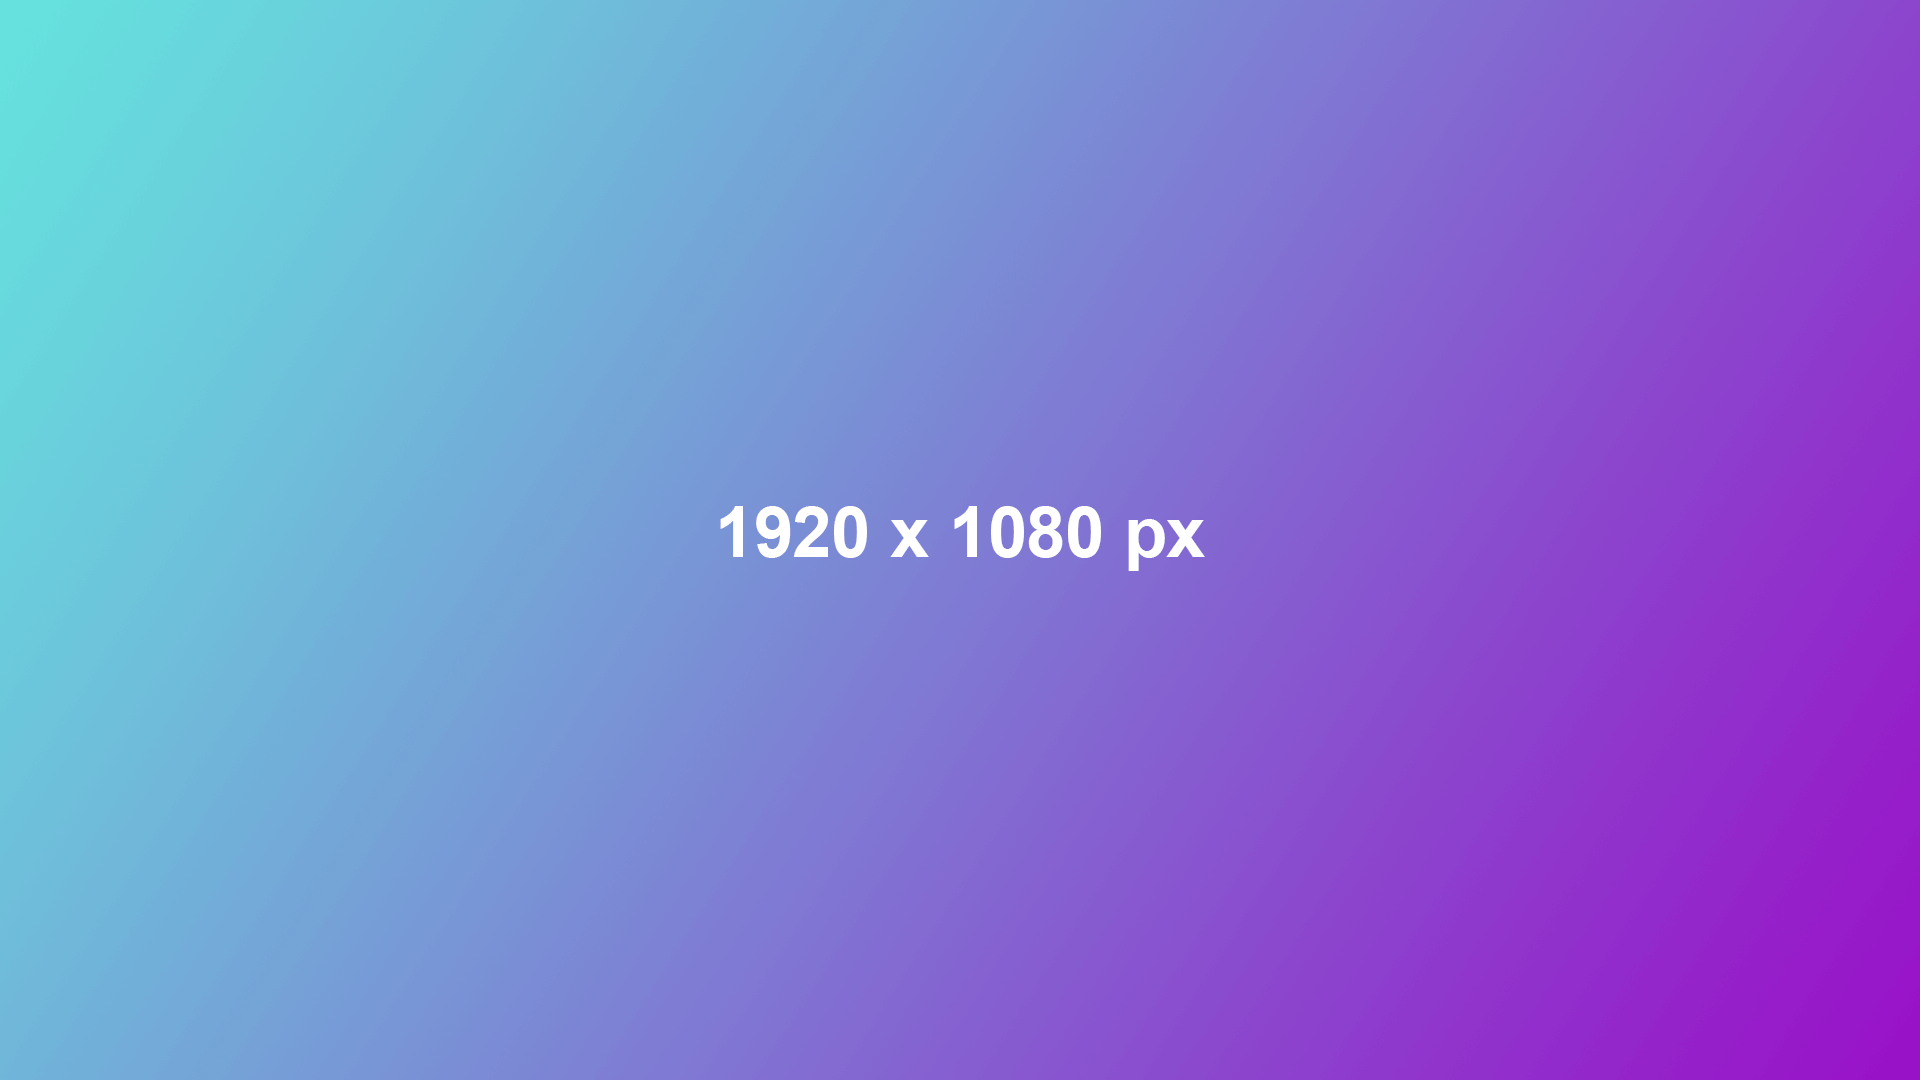 1920x1080 px